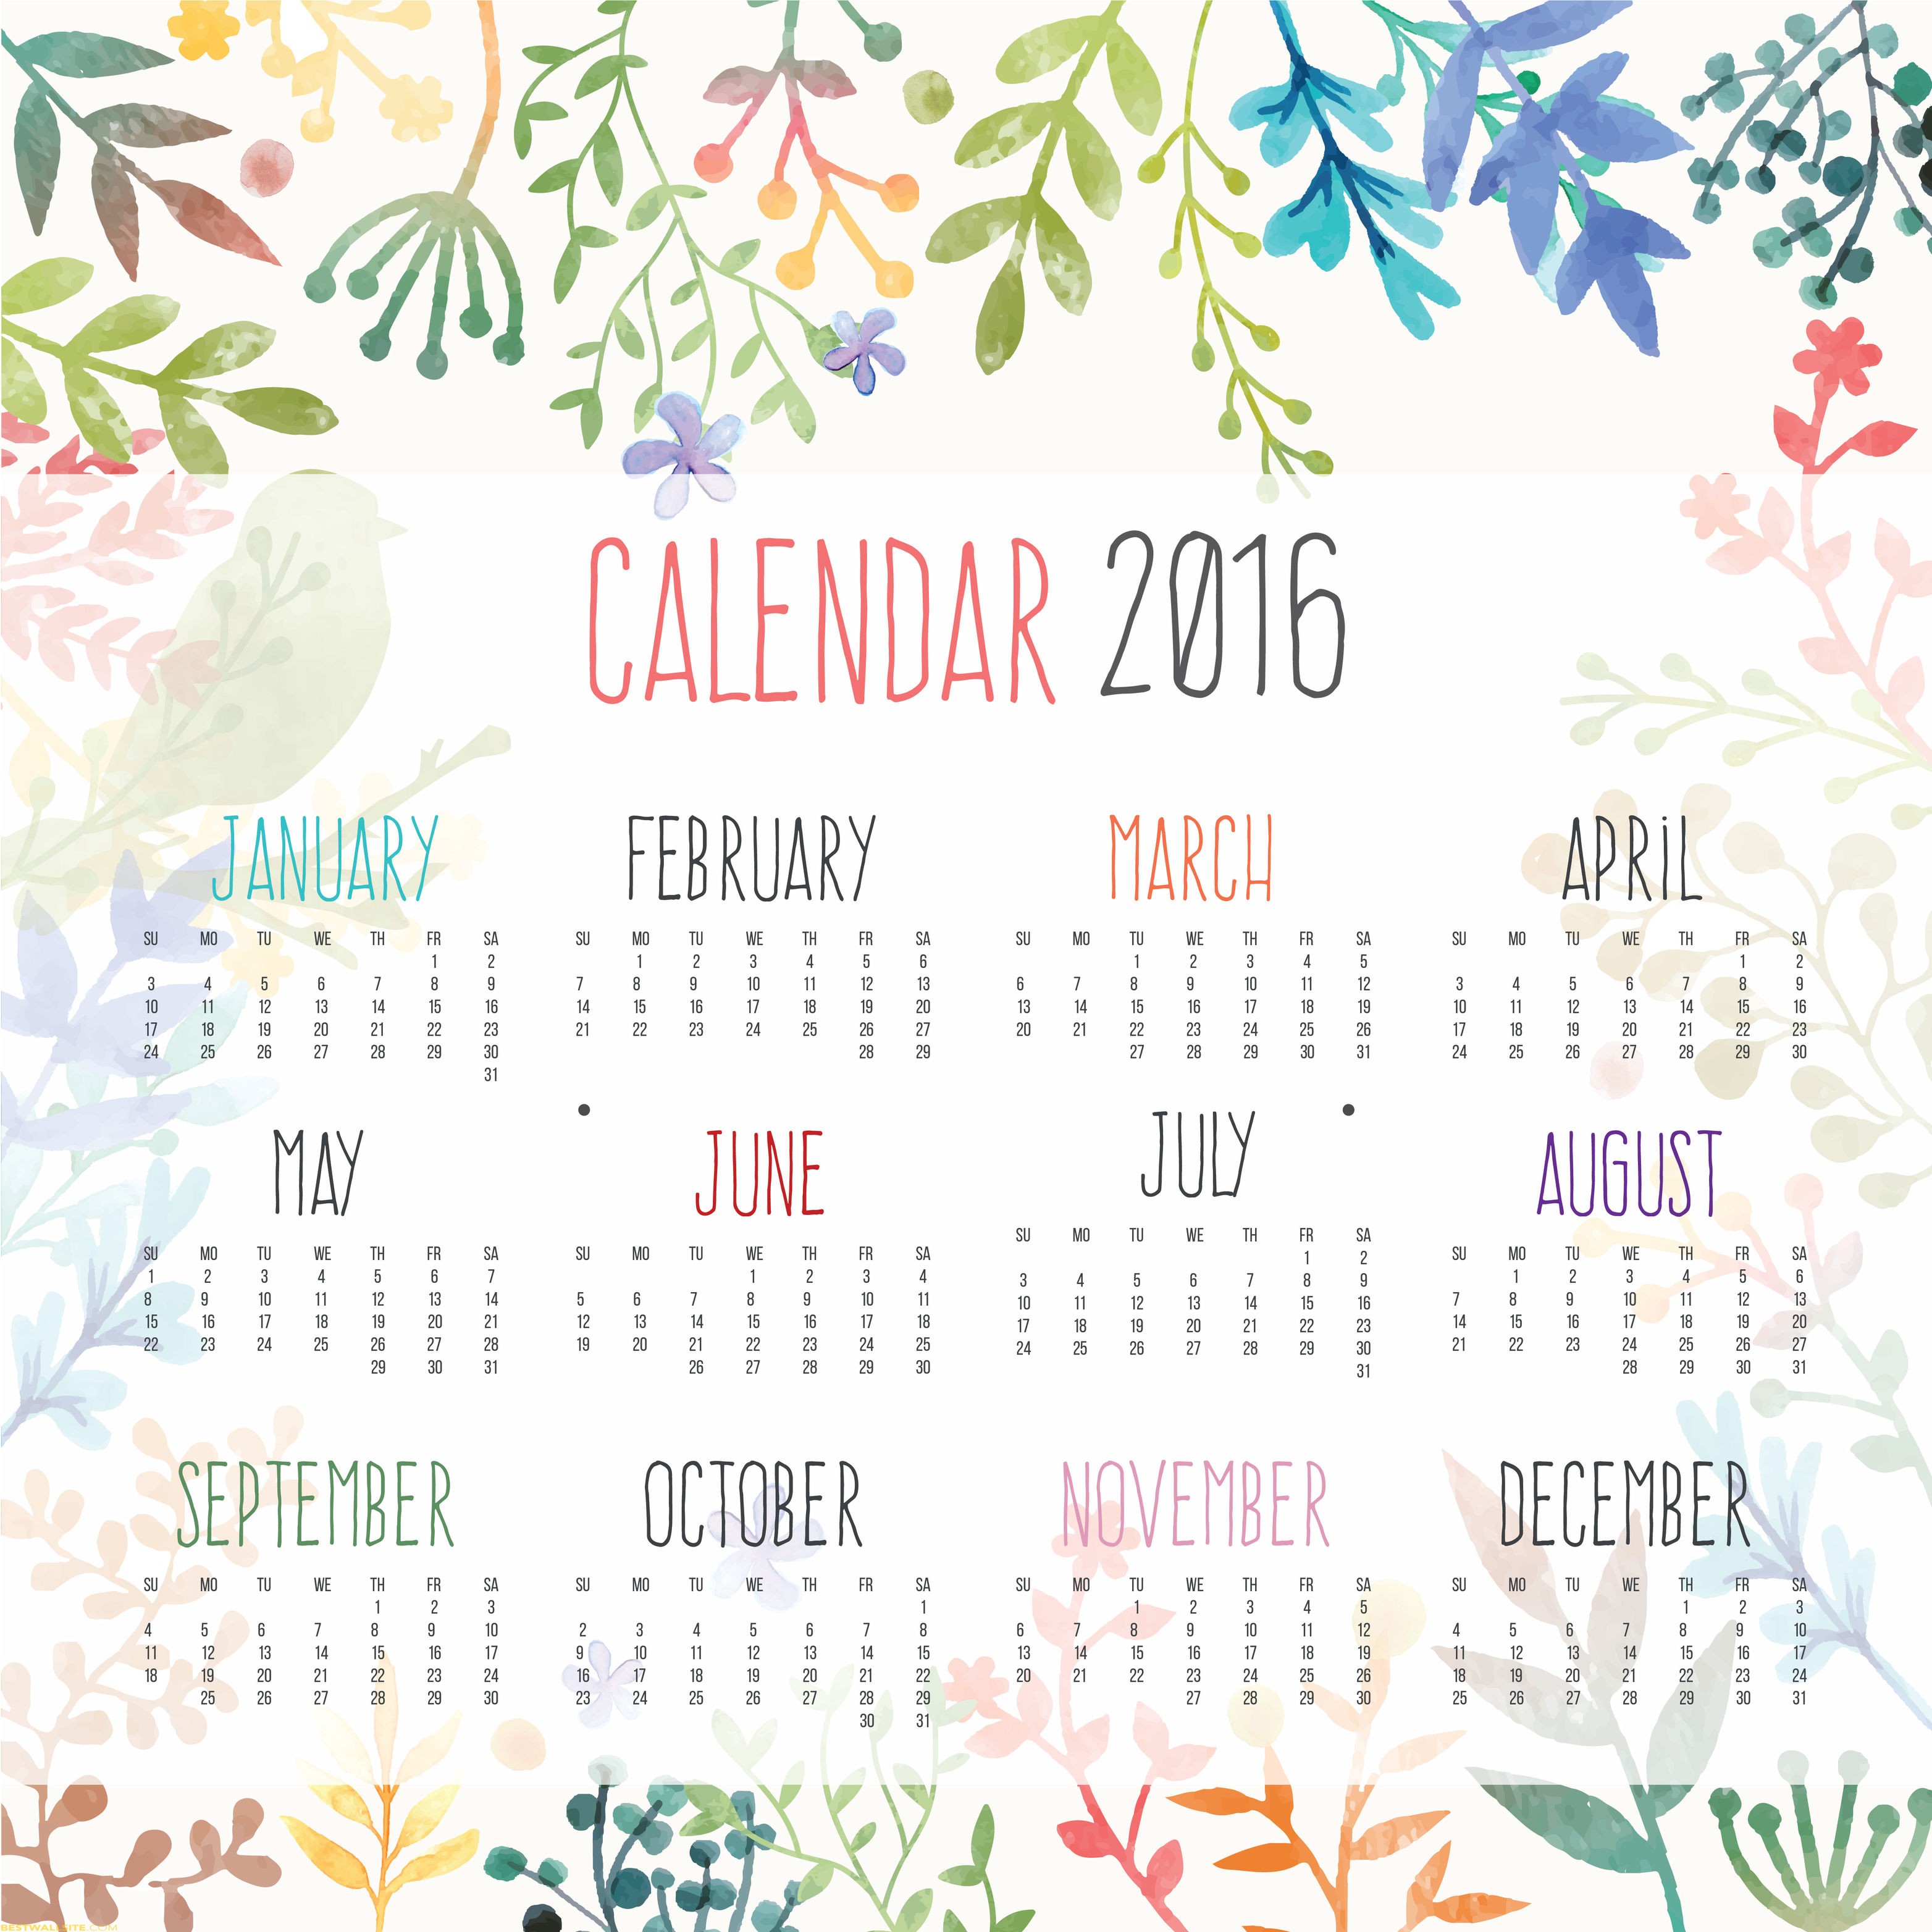 2016 Wall Calendar FULL HD BestWallSitecom